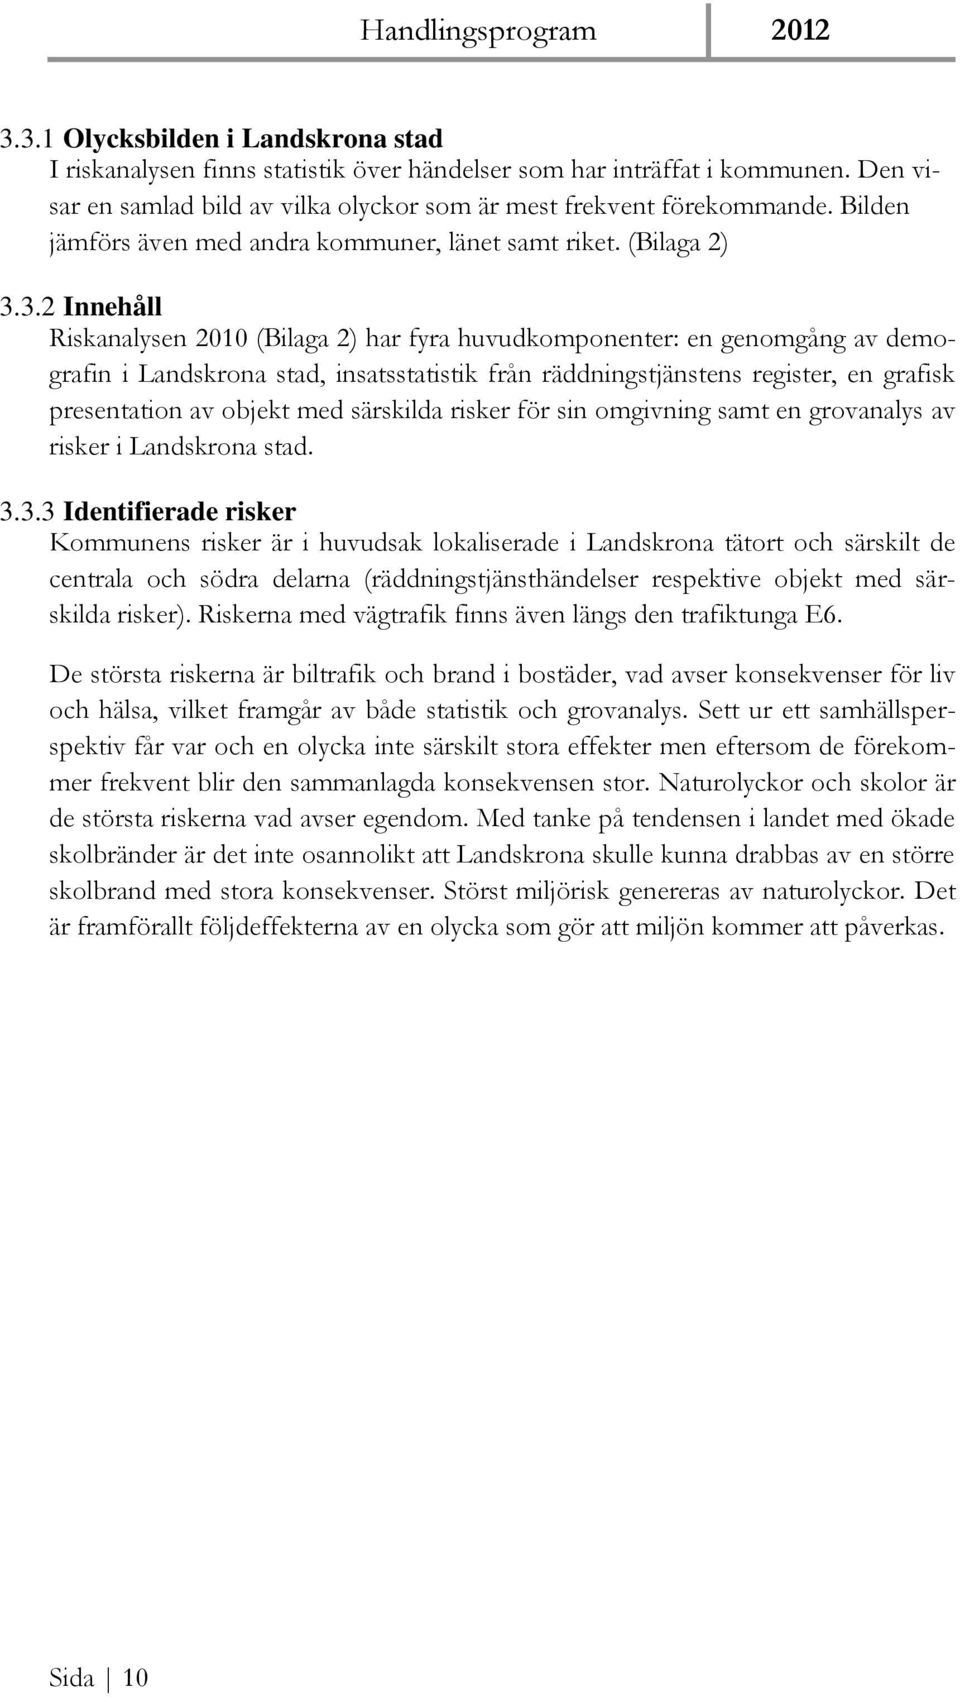 3.2 Innehåll Riskanalysen 2010 (Bilaga 2) har fyra huvudkomponenter: en genomgång av demografin i Landskrona stad, insatsstatistik från räddningstjänstens register, en grafisk presentation av objekt